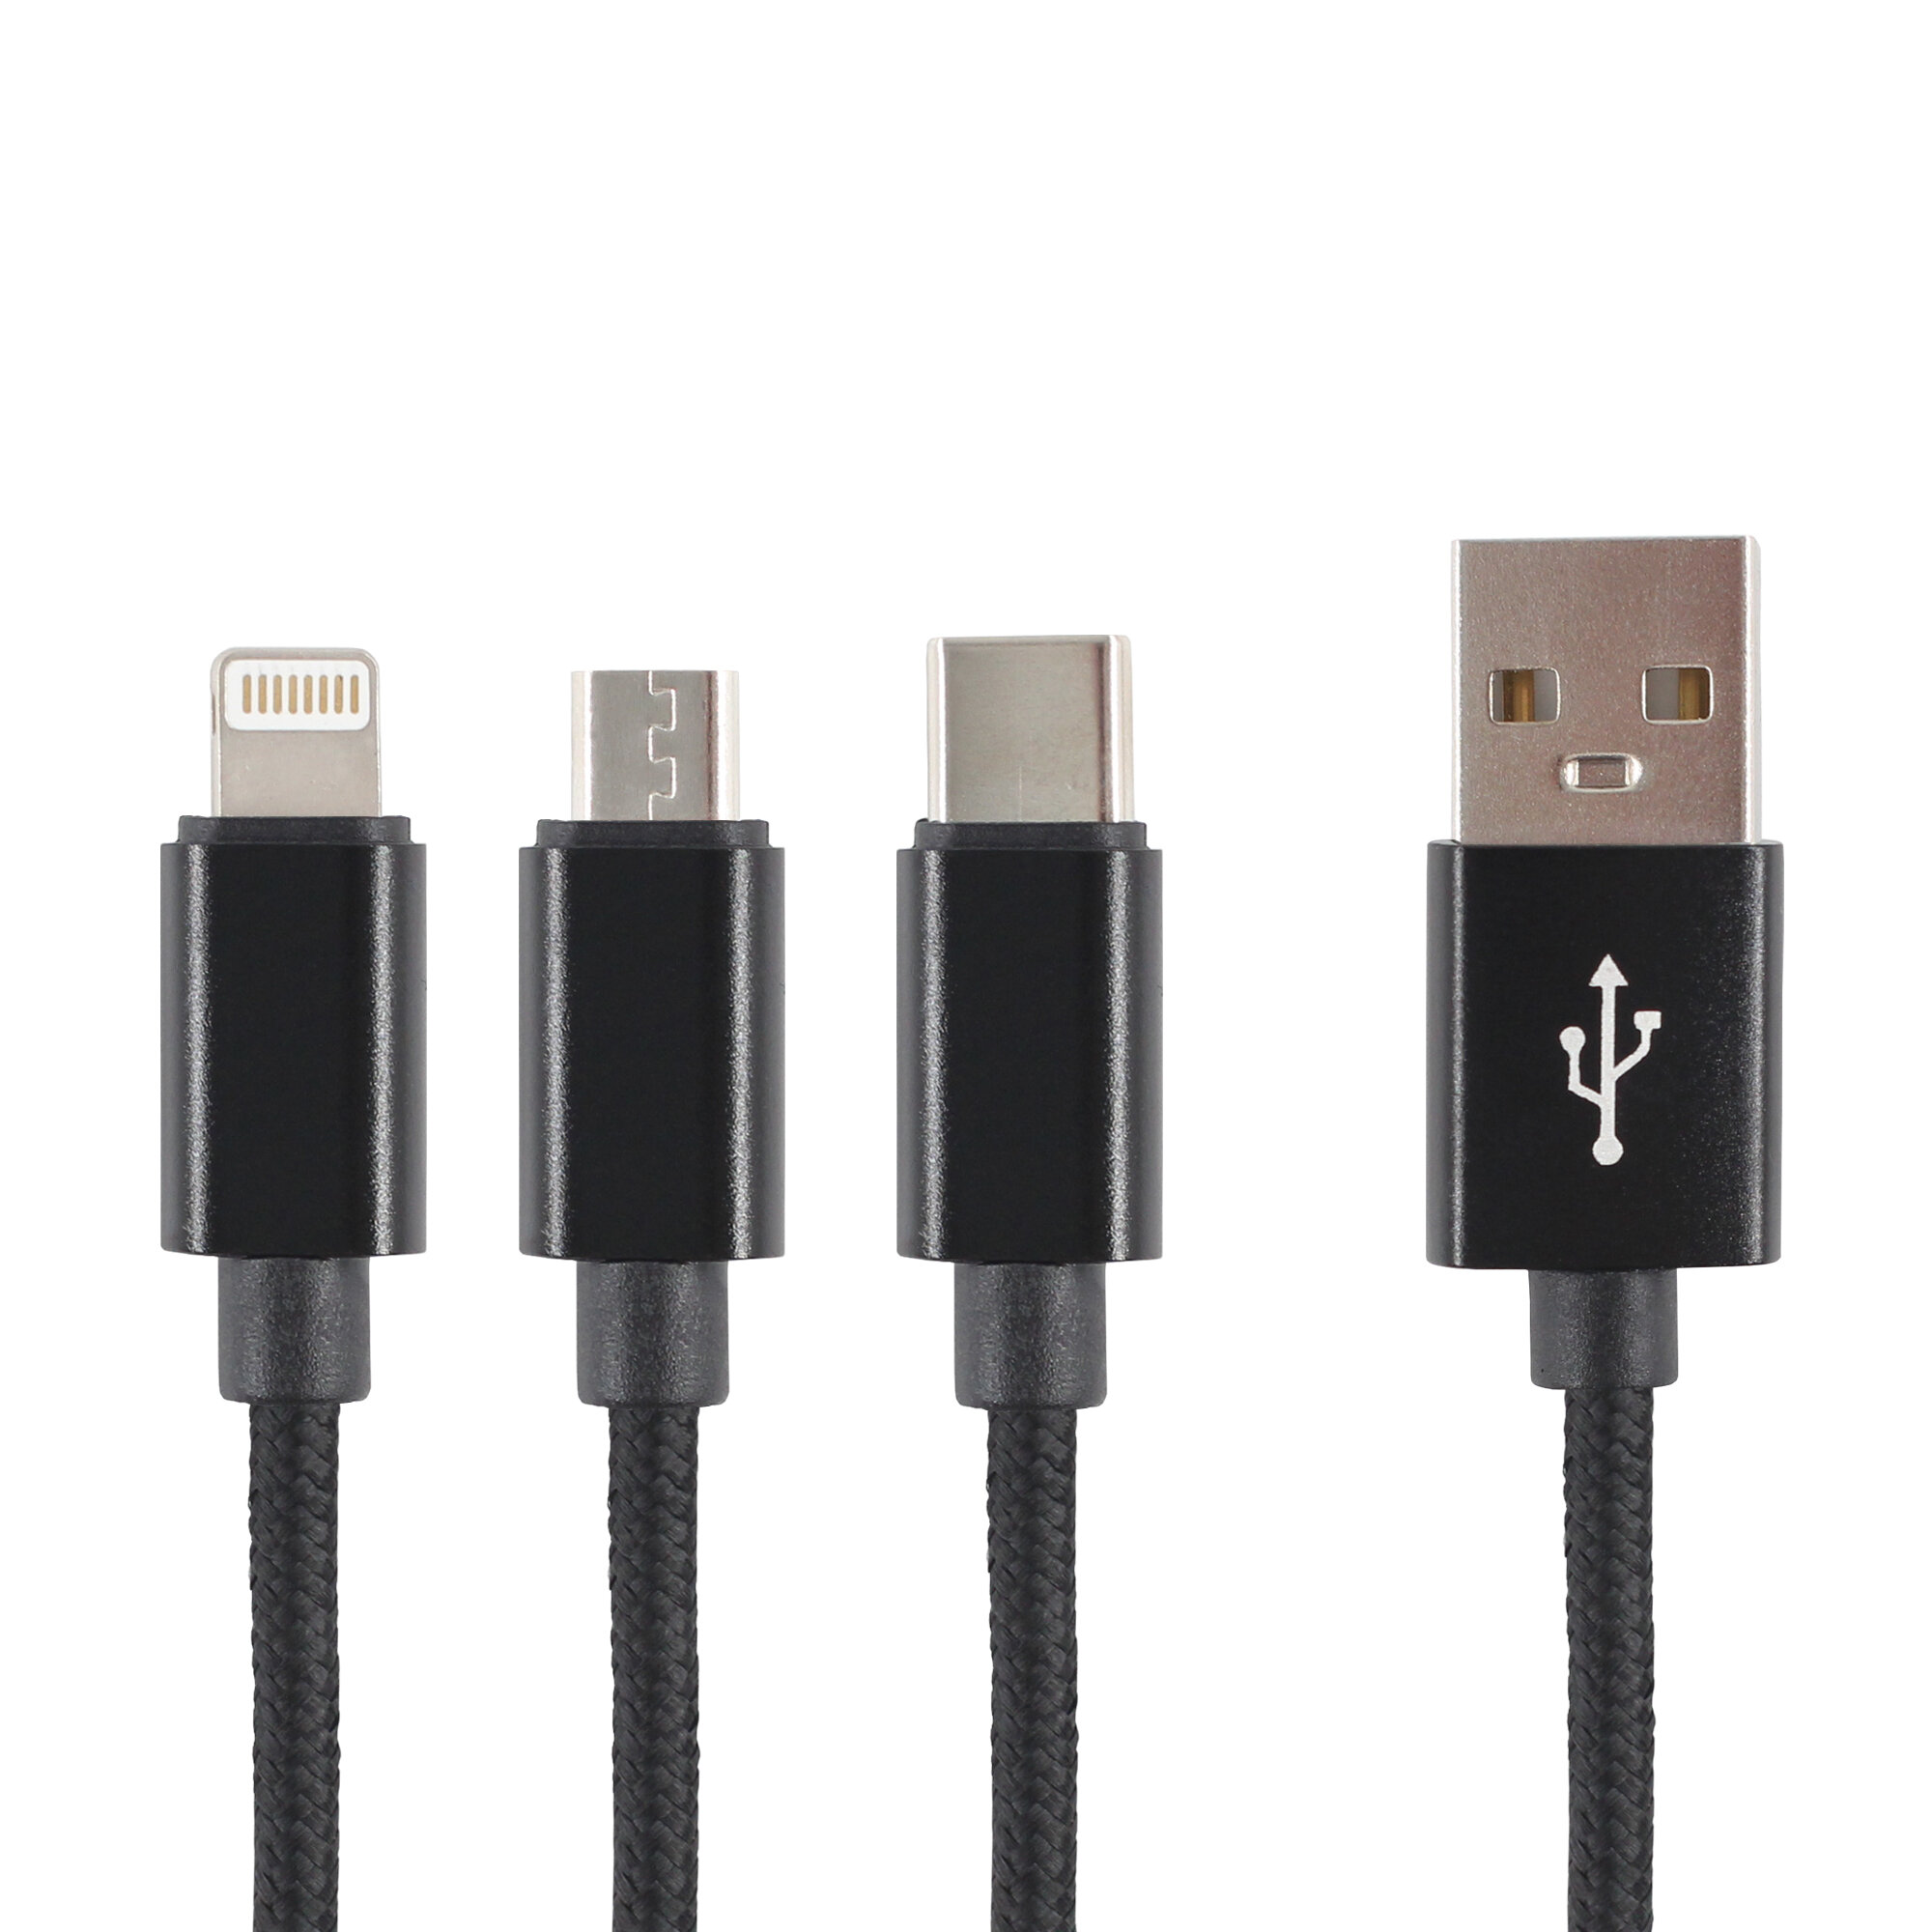 Универсальный кабель 3 в 1 (Lightning, TYPE-C, MICRO USB), usb провод 1,2м, Зарядка для iphone, Зарядка для Android, Кабель 3 в одном Jamme, usb шнур